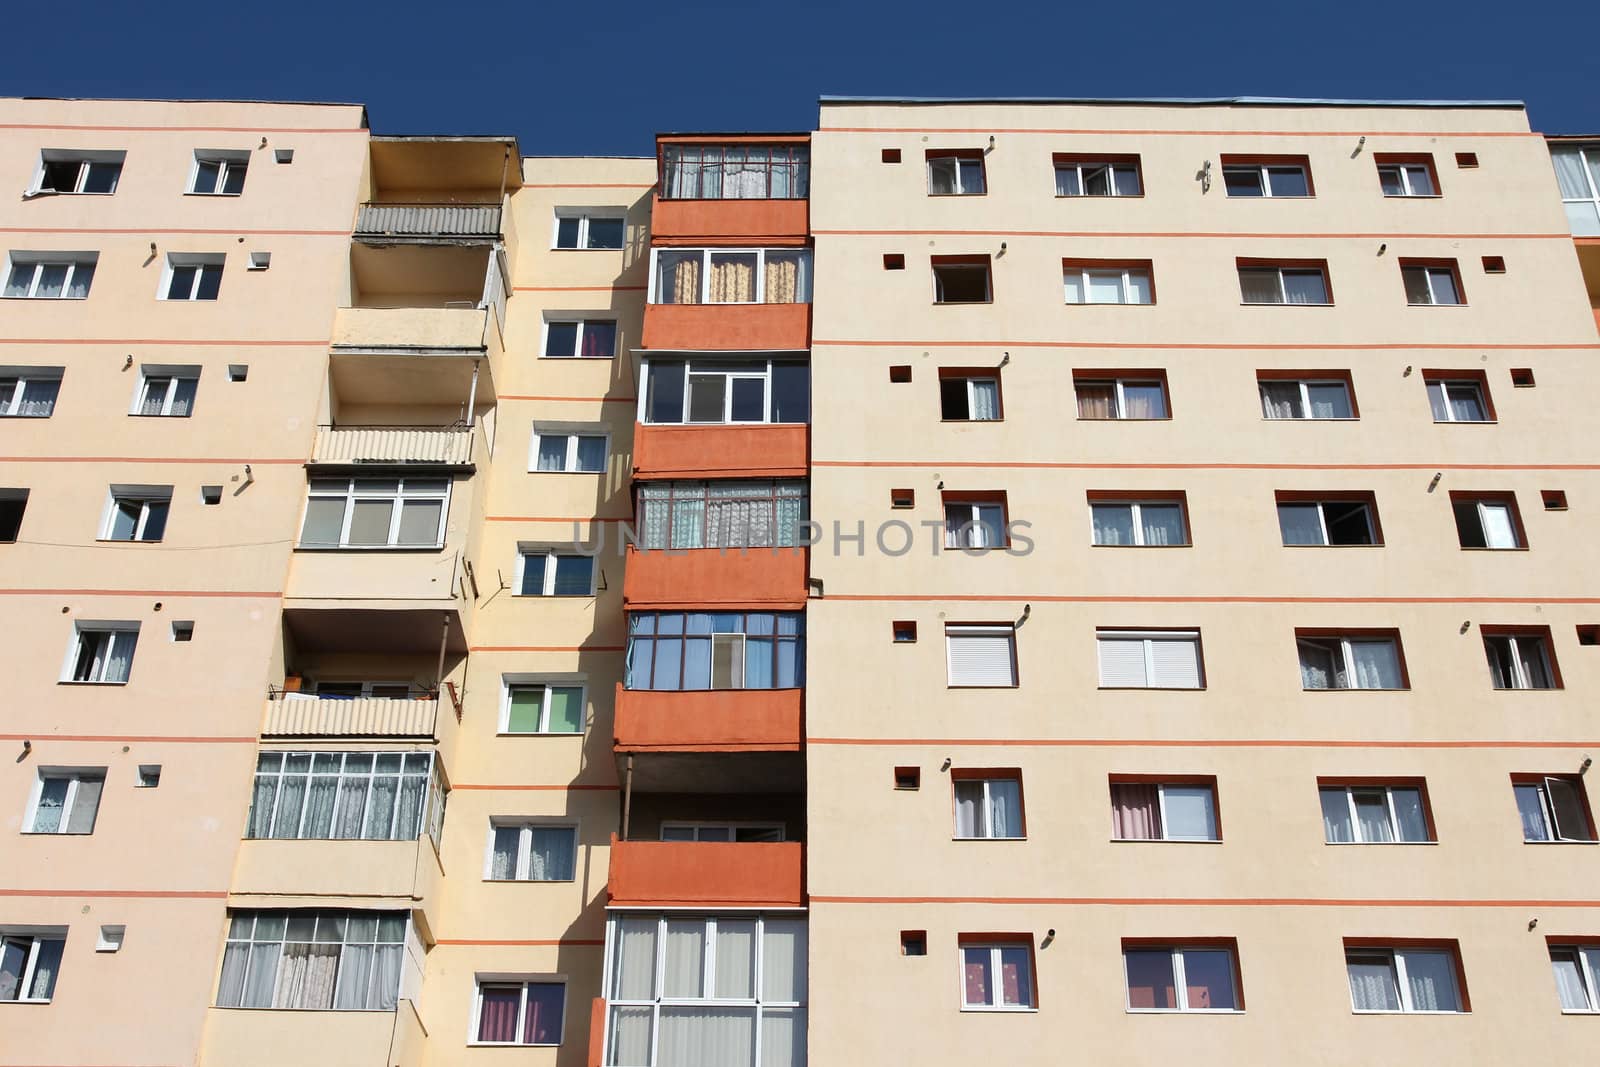 Apartment building from communism period in Sibiu, Romania. Average condominium.